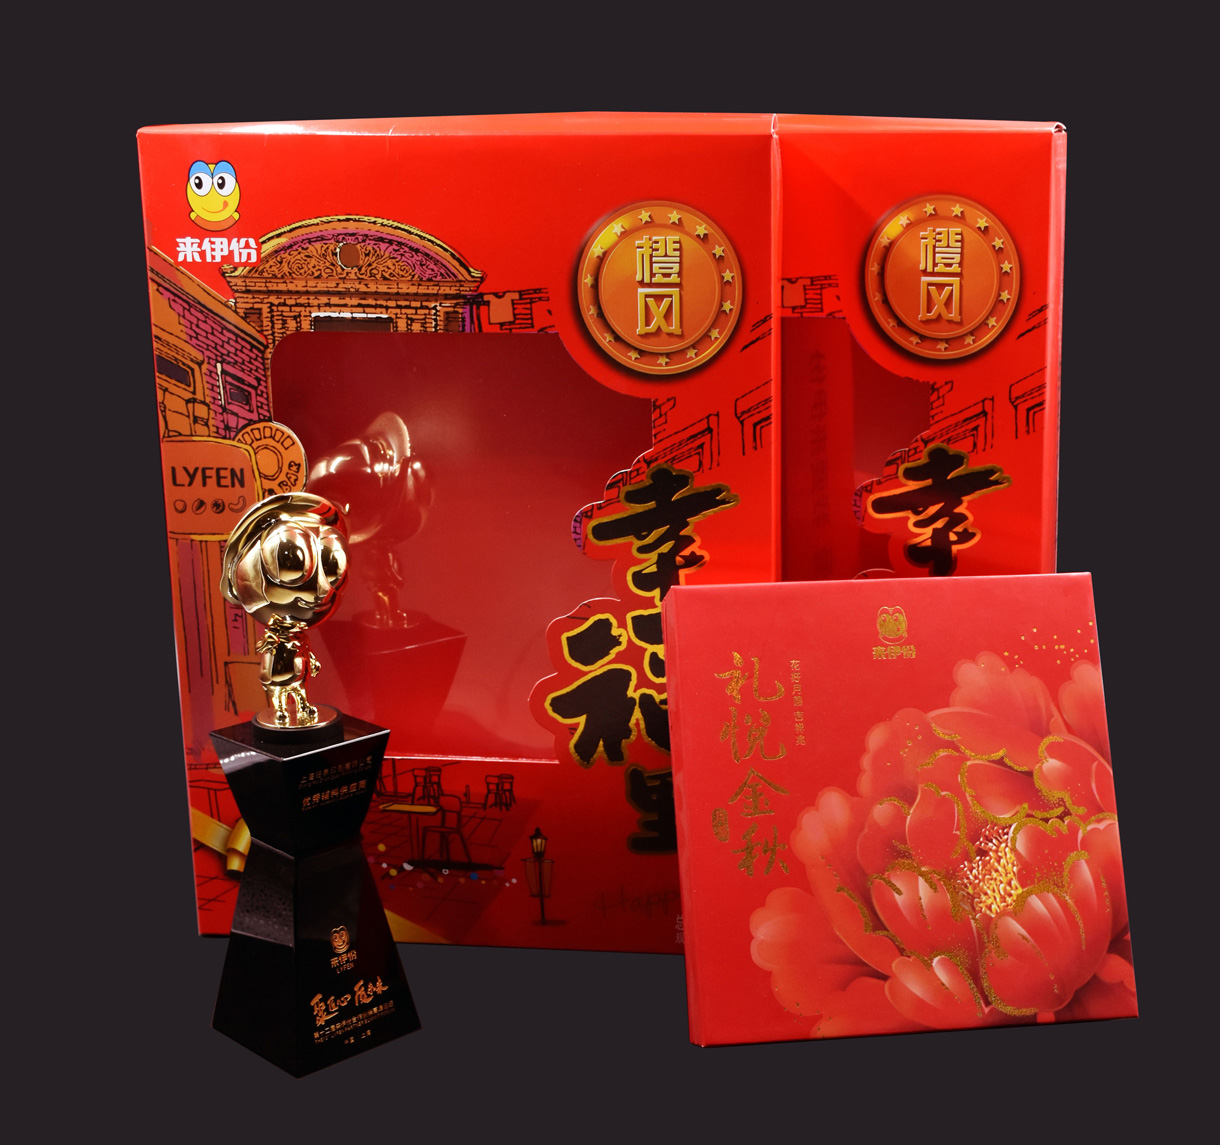 上海昭泉印刷有限公司将参加奢侈品包装展